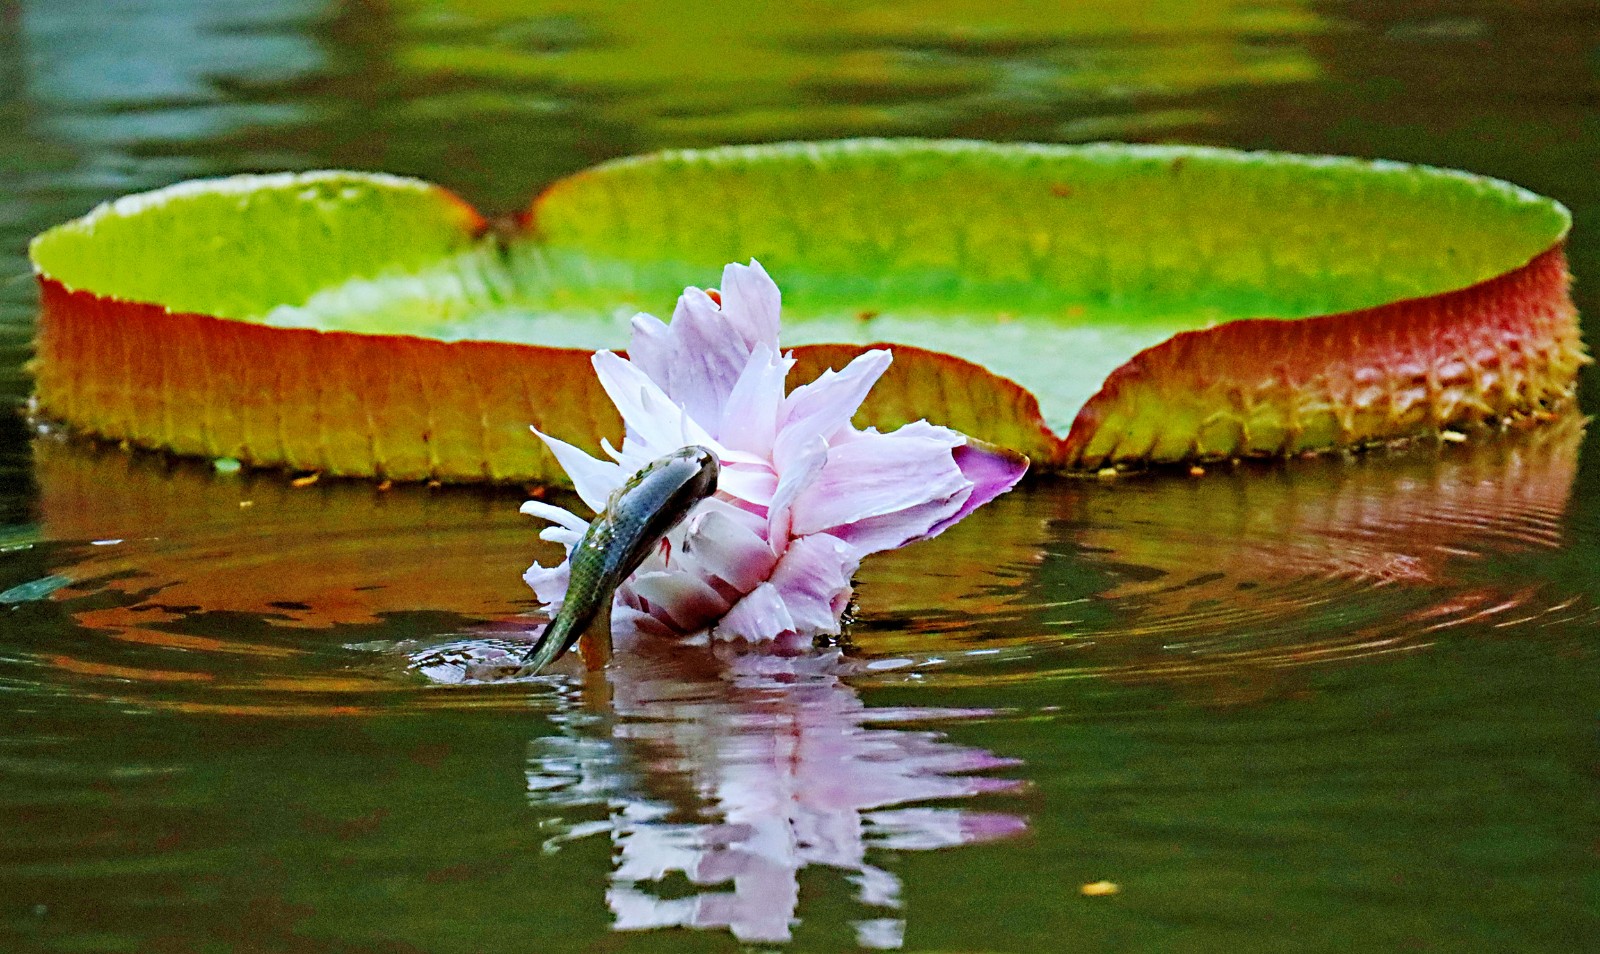 2 受鱼儿青睐的是广州珠江公园新引进的王莲花。王莲花较其他莲花根茎短，鱼儿跃起刚好够得上鲜嫩的花瓣。（来源：广州珠江公园）a.jpg